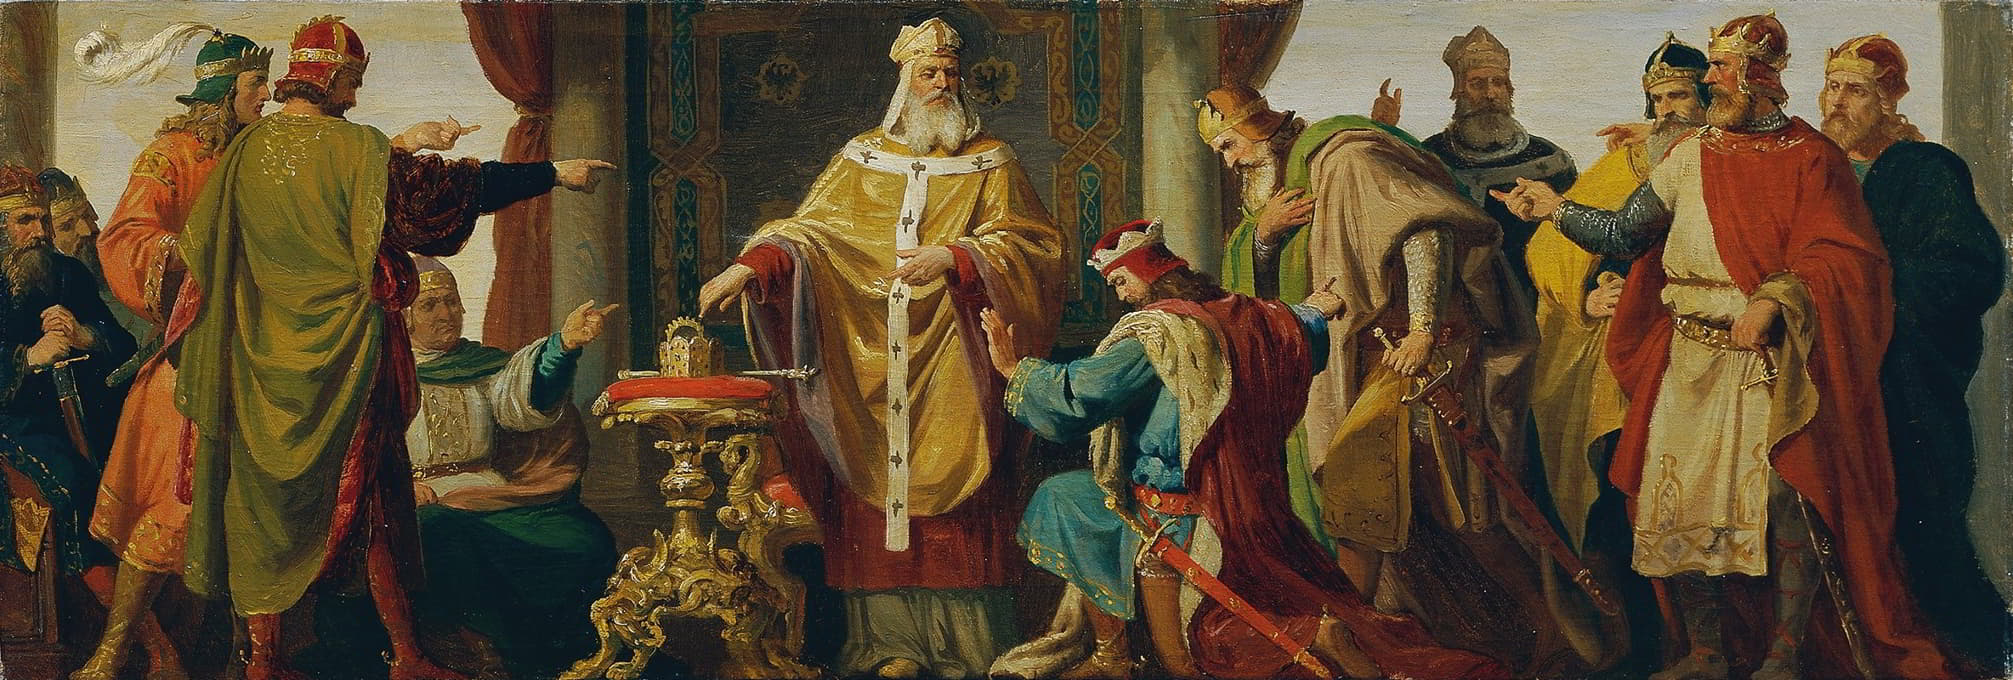 圣人利奥波德拒绝皇冠